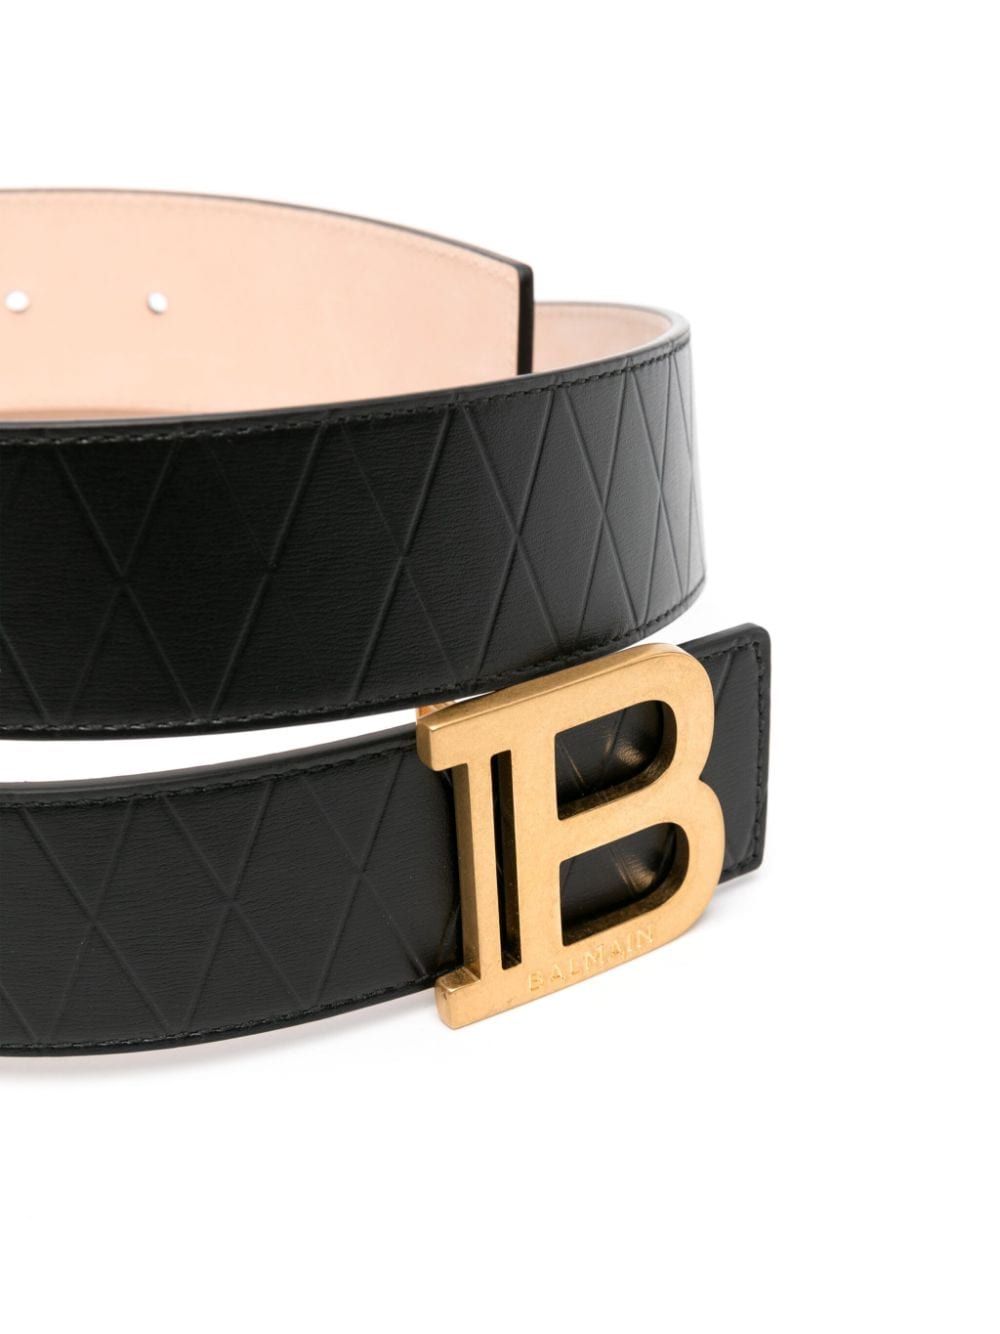 Balmain B-buckle leather belt - Zwart